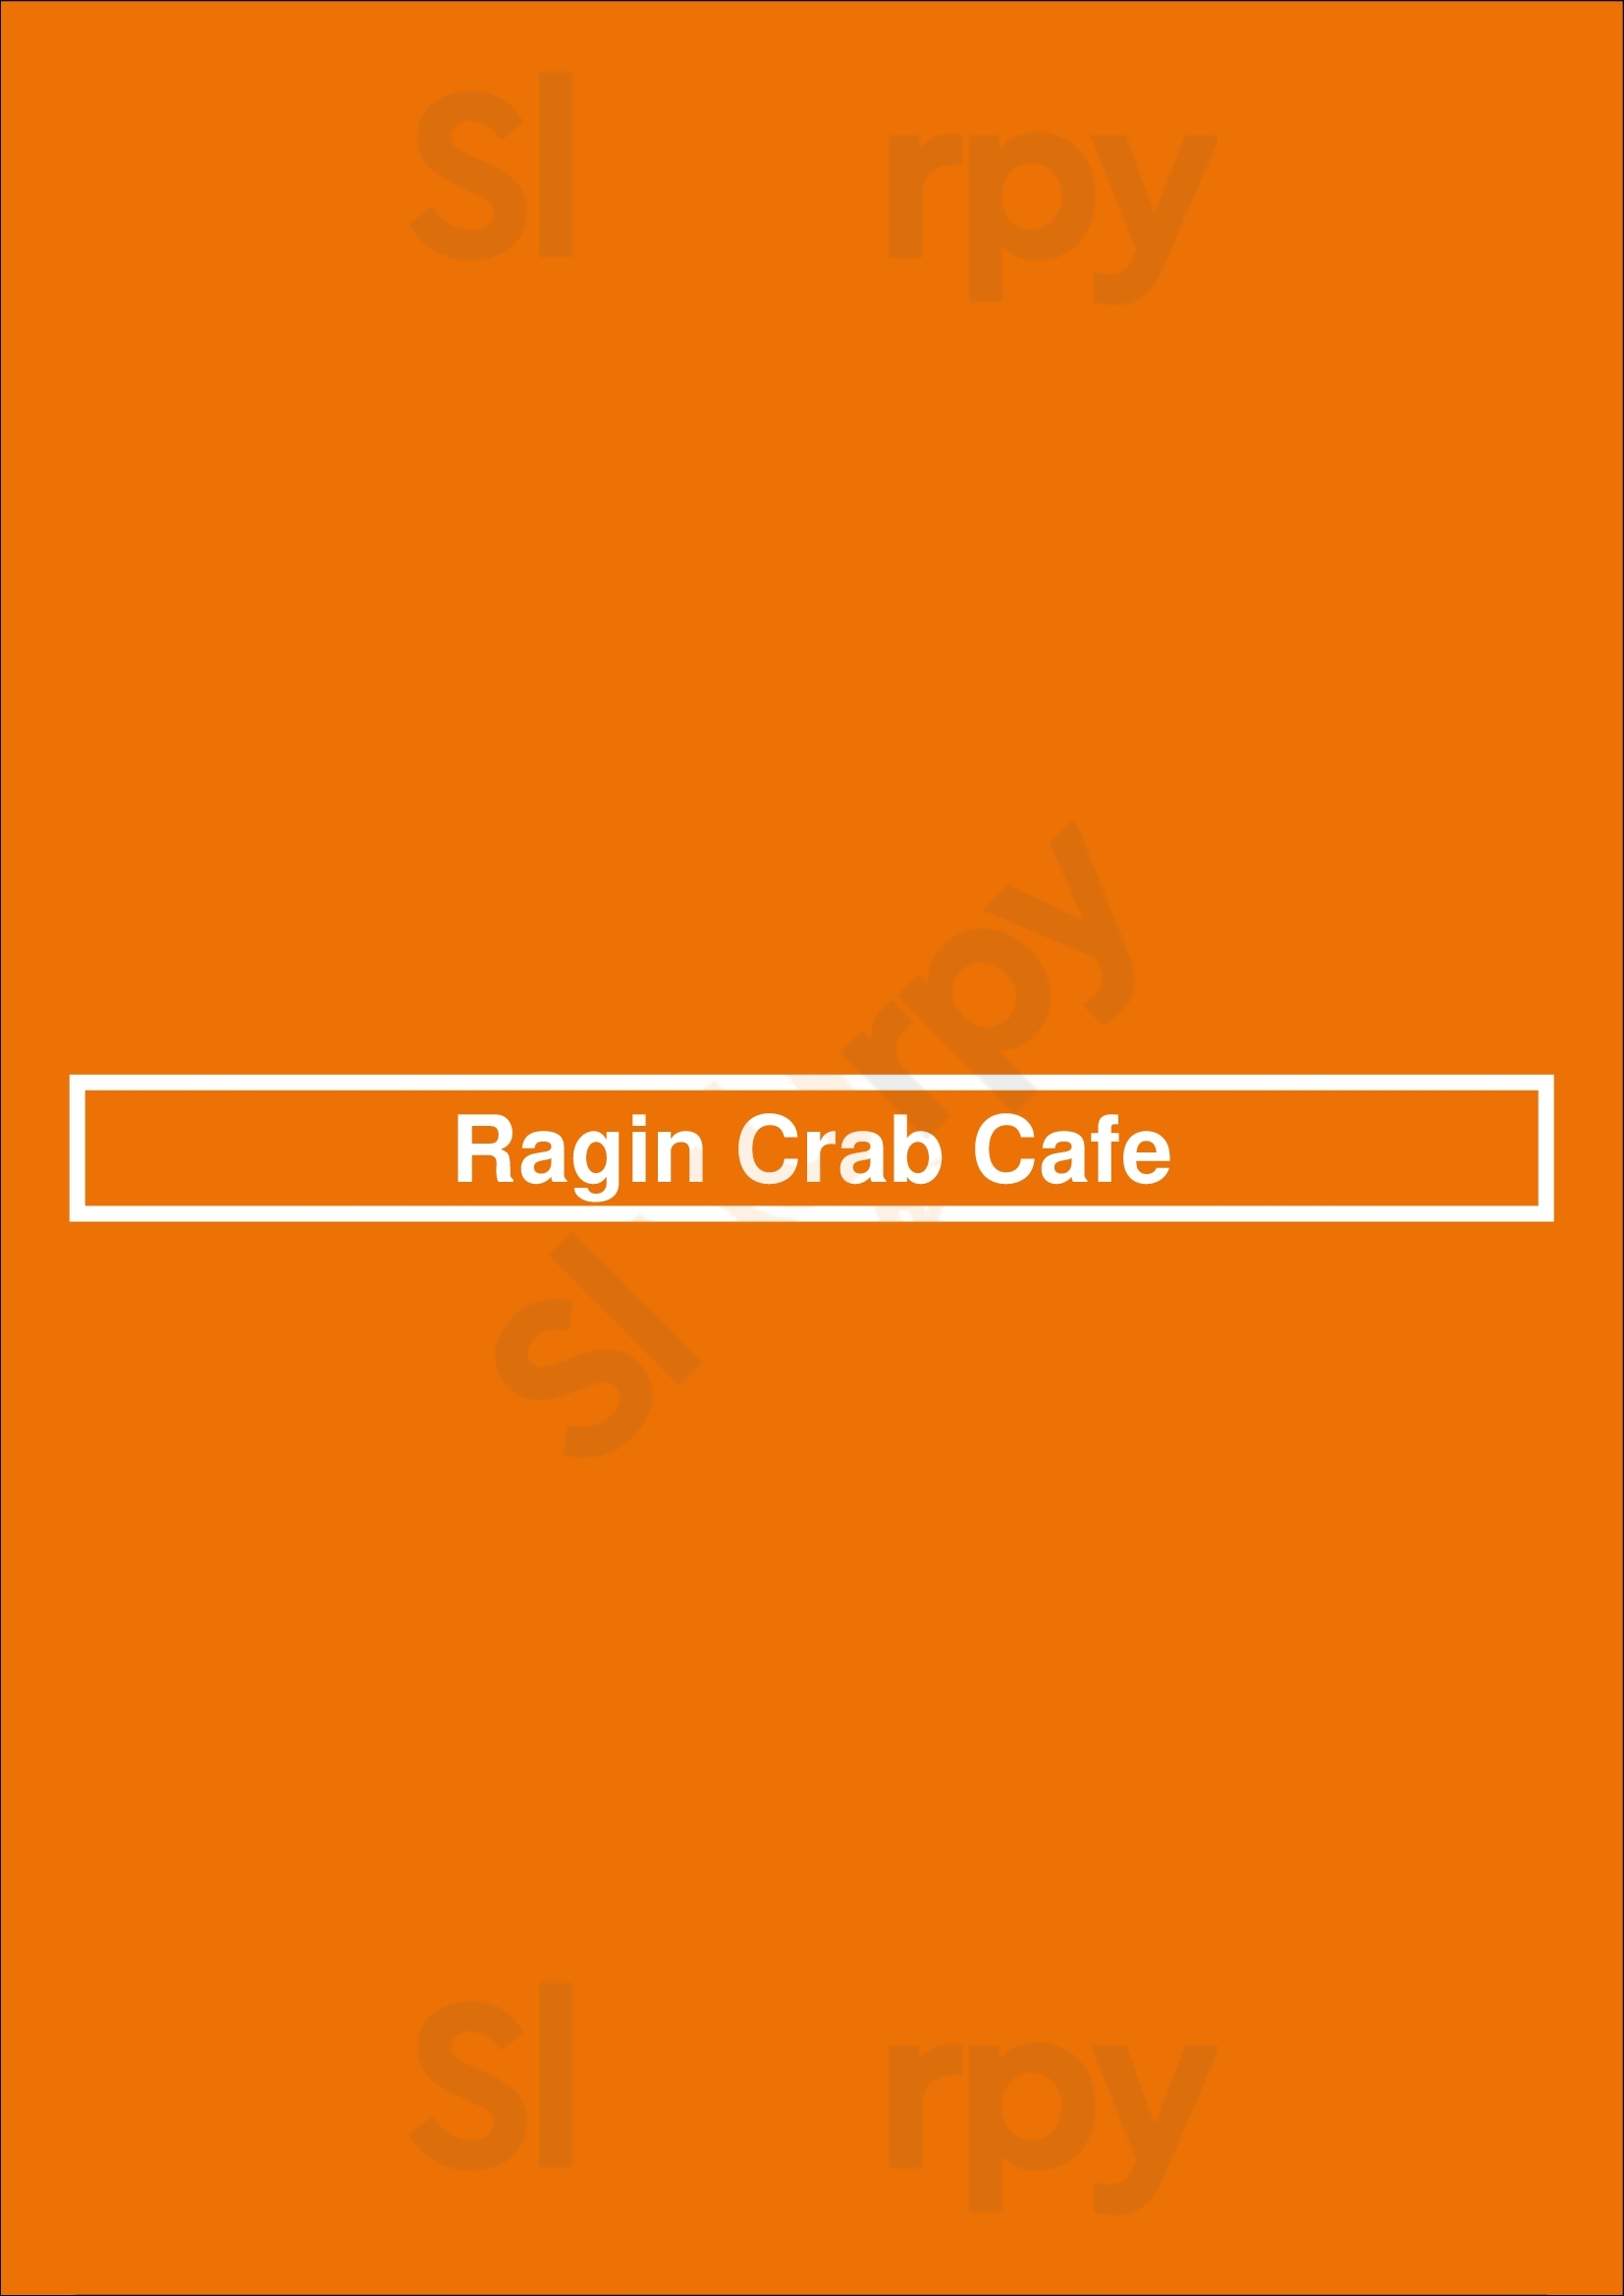 Ragin Crab Cafe Dallas Menu - 1